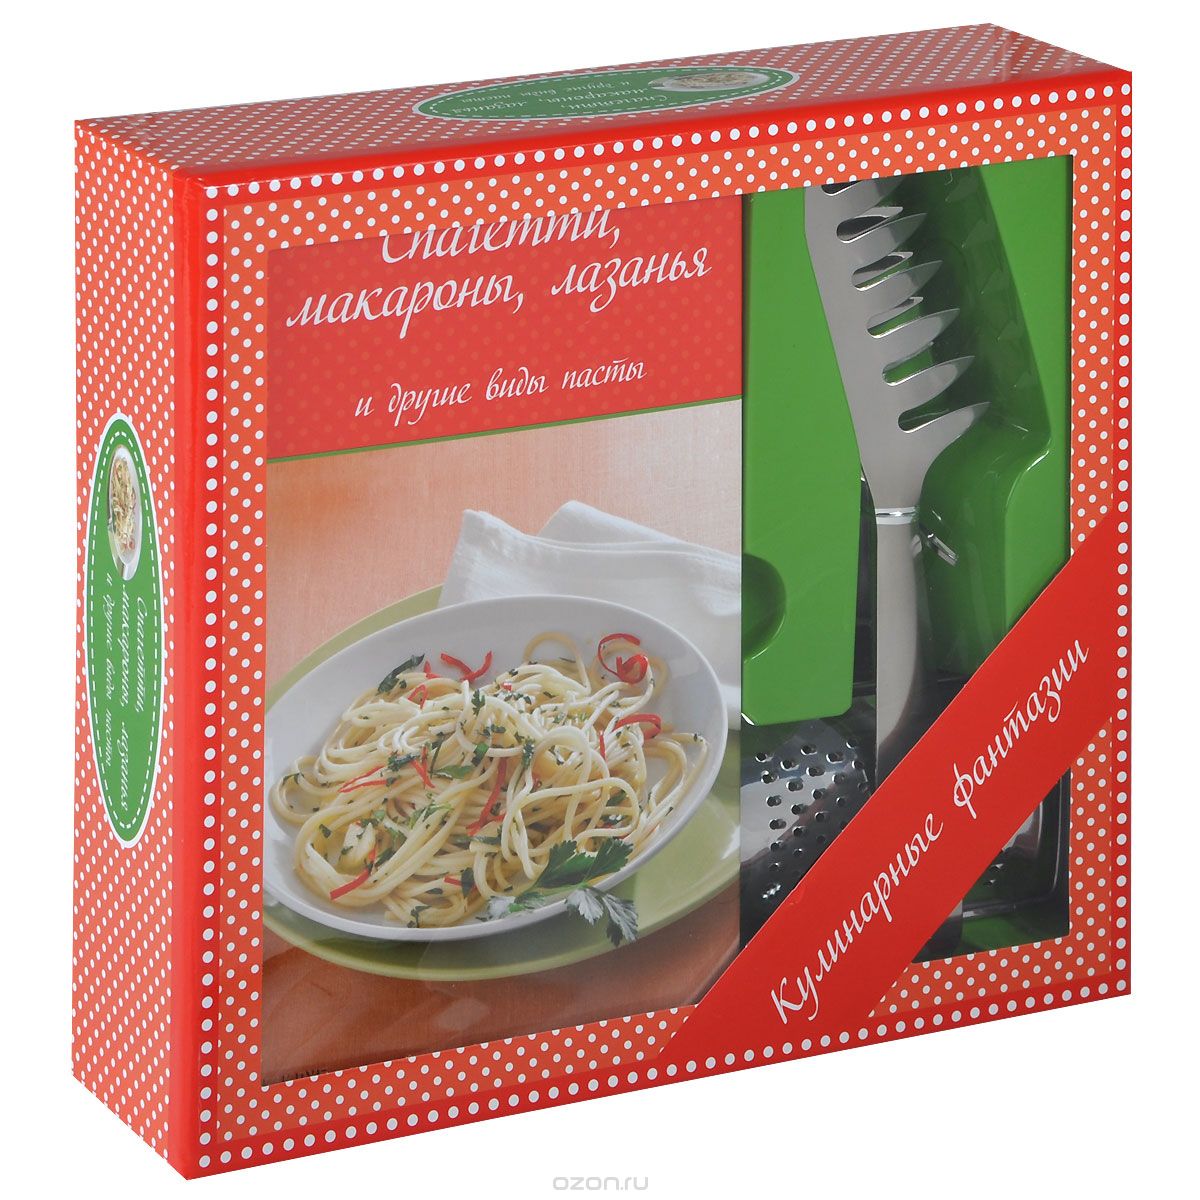 Скачать книгу "Спагетти, макароны, лазанья и другие виды пасты (+ терка для сыра и щипцы для спагетти)"